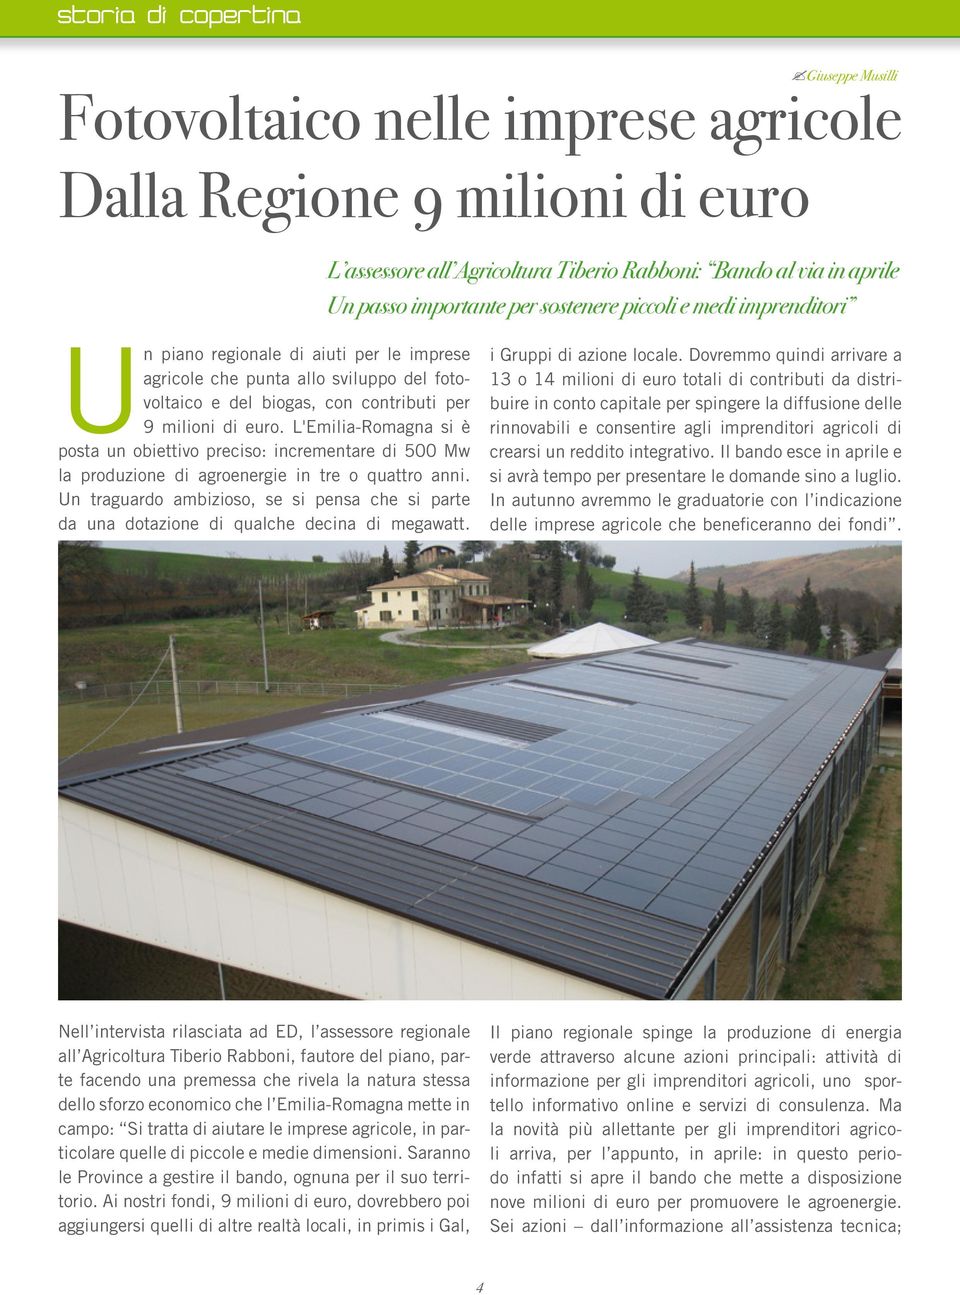 medi imprenditori Un piano regionale di aiuti per le imprese agricole che punta allo sviluppo del fotovoltaico e del biogas, con contributi per 9 milioni di euro.